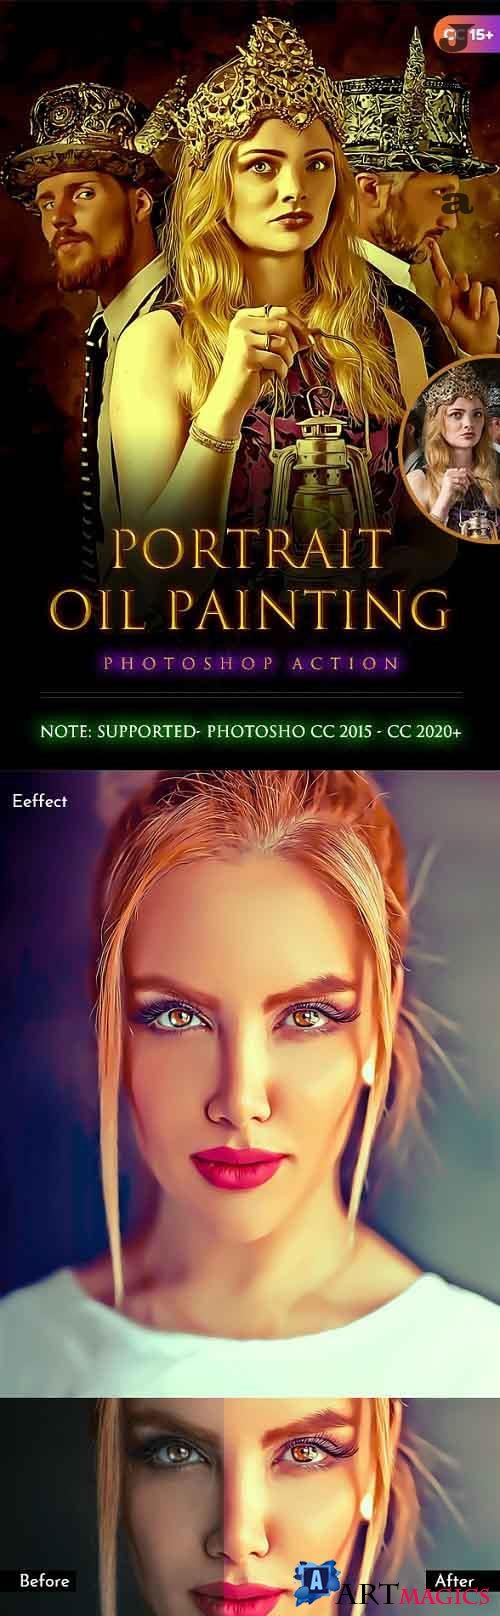 Portrait Oil Painting Action 28368558